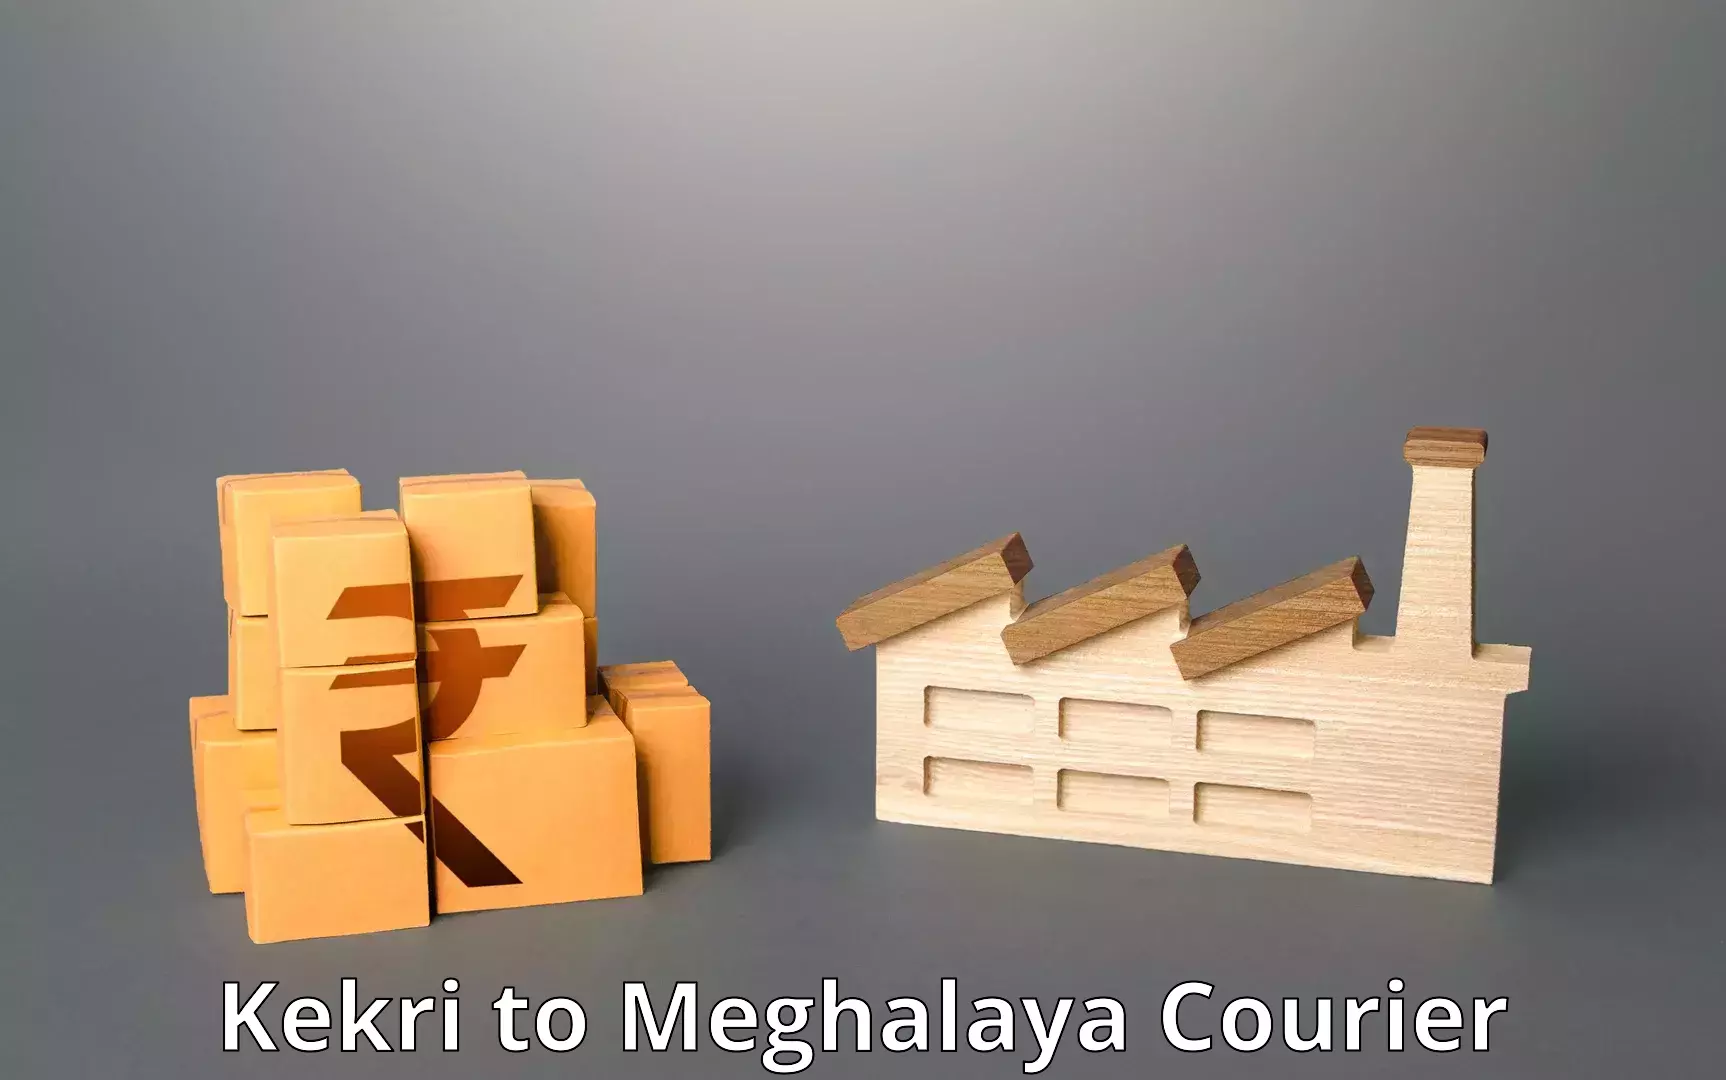 Smart shipping technology Kekri to Meghalaya